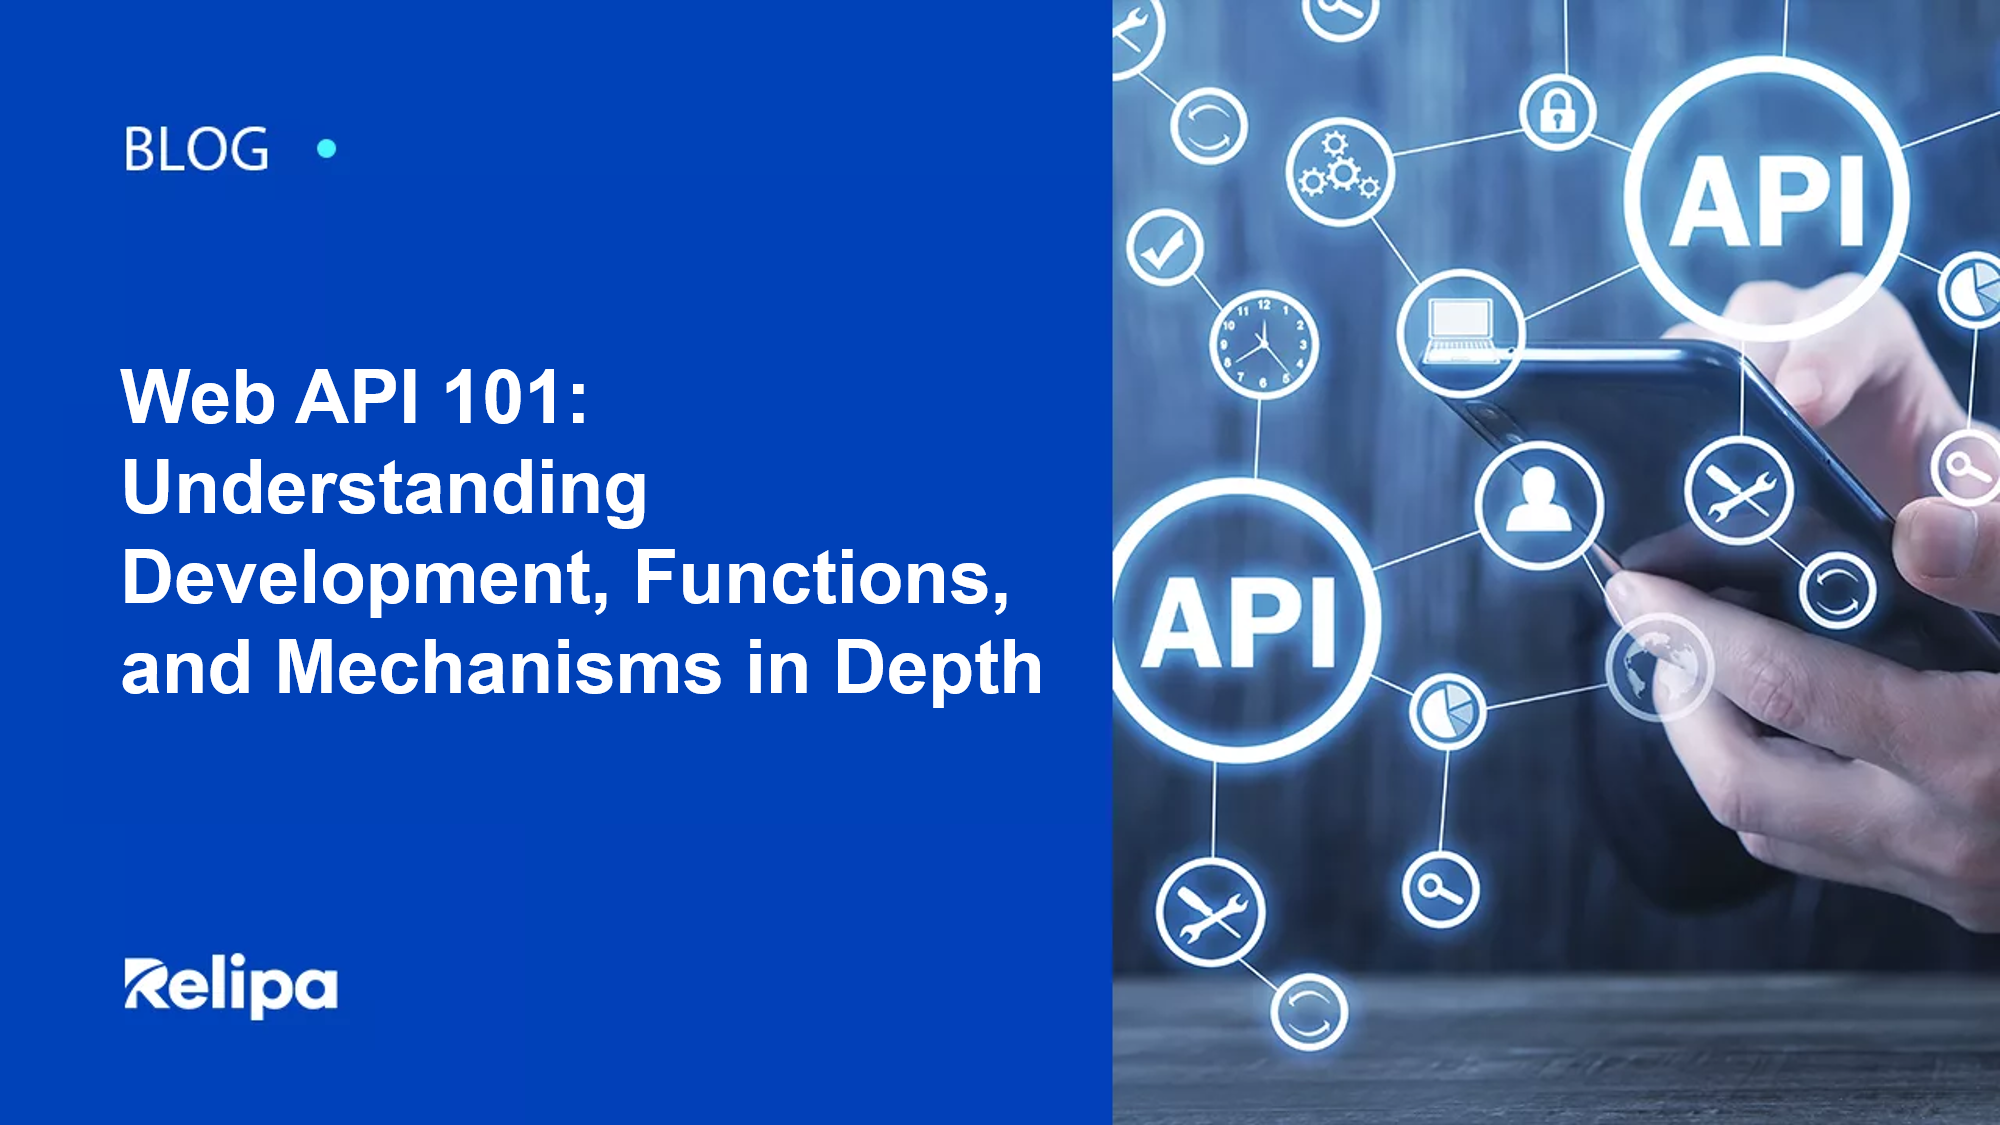 Web API 101: Understanding Development, Functions, and Mechanisms in Depth